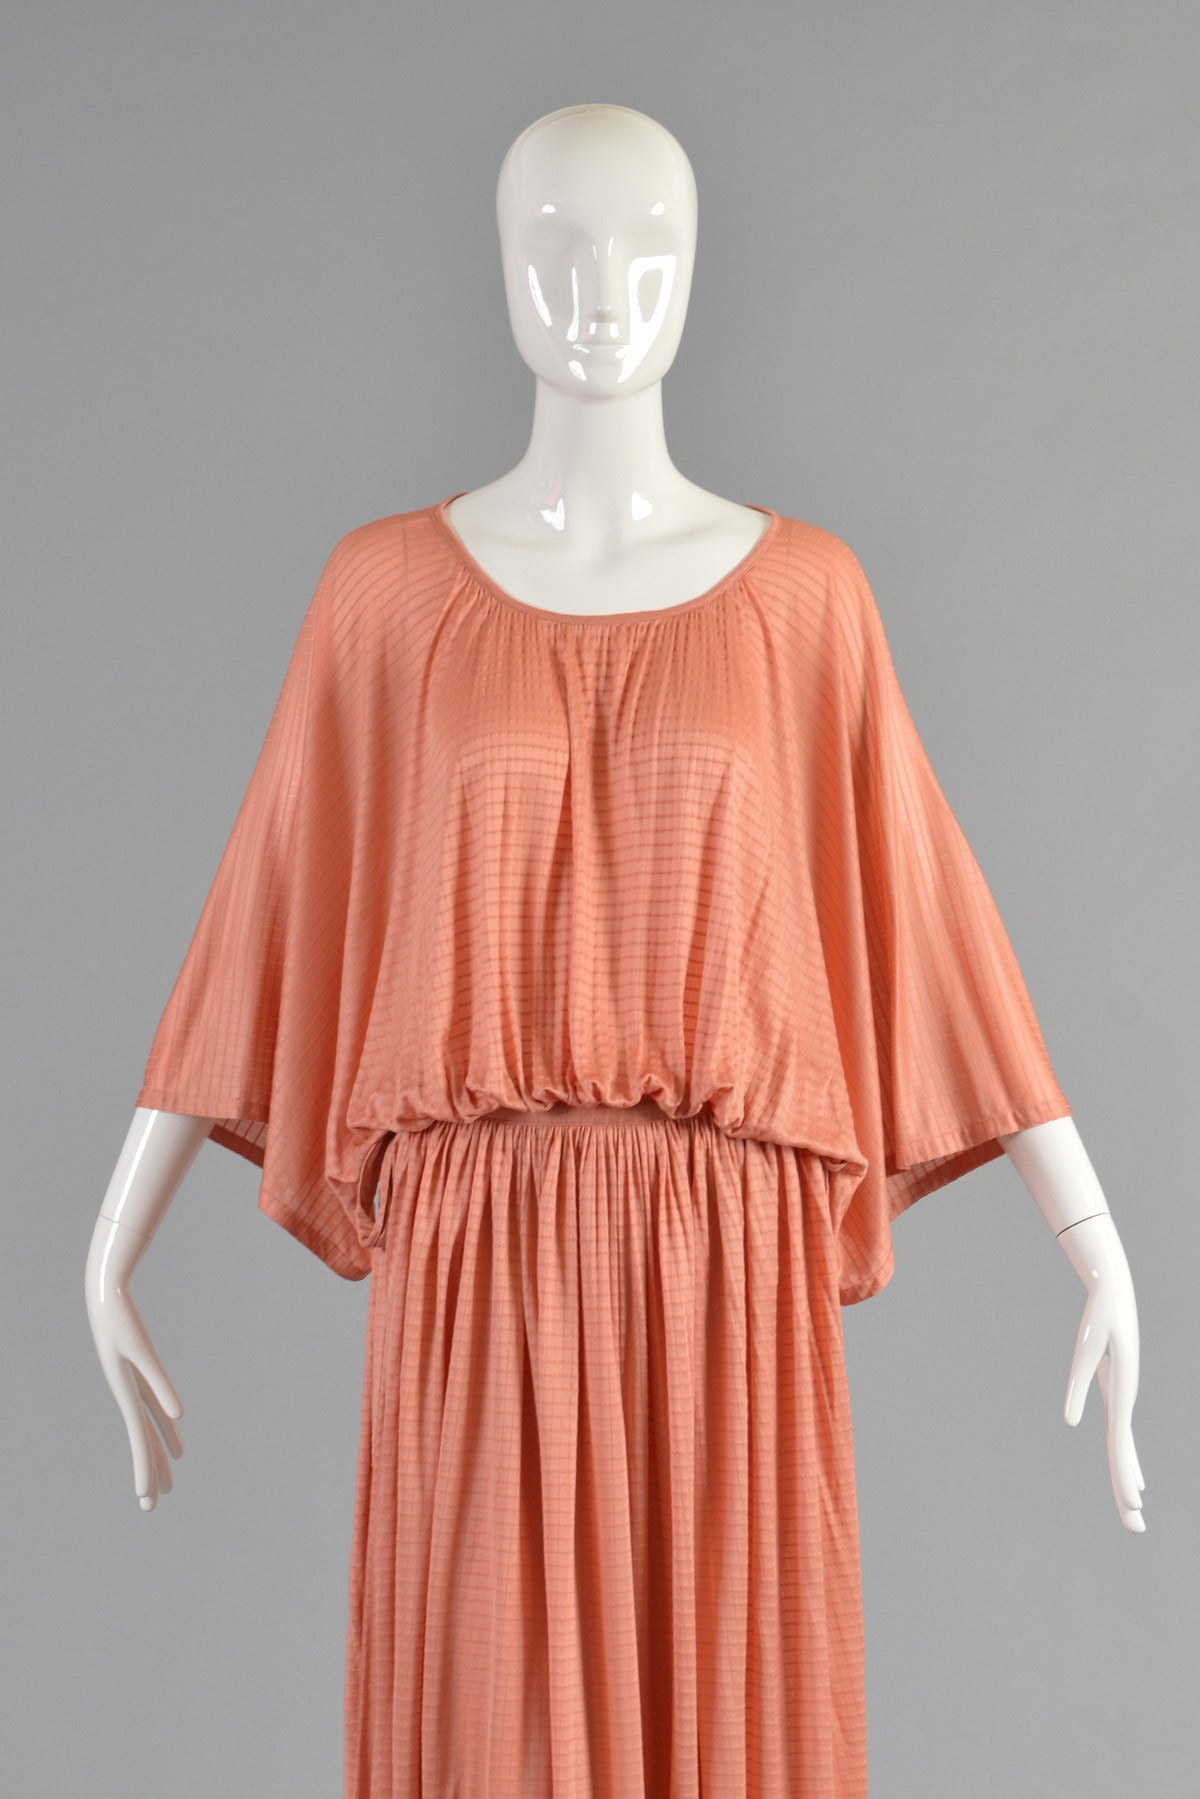 Orange Lovely Missoni 2-Piece Skirt and Kimono Top Ensemble For Sale